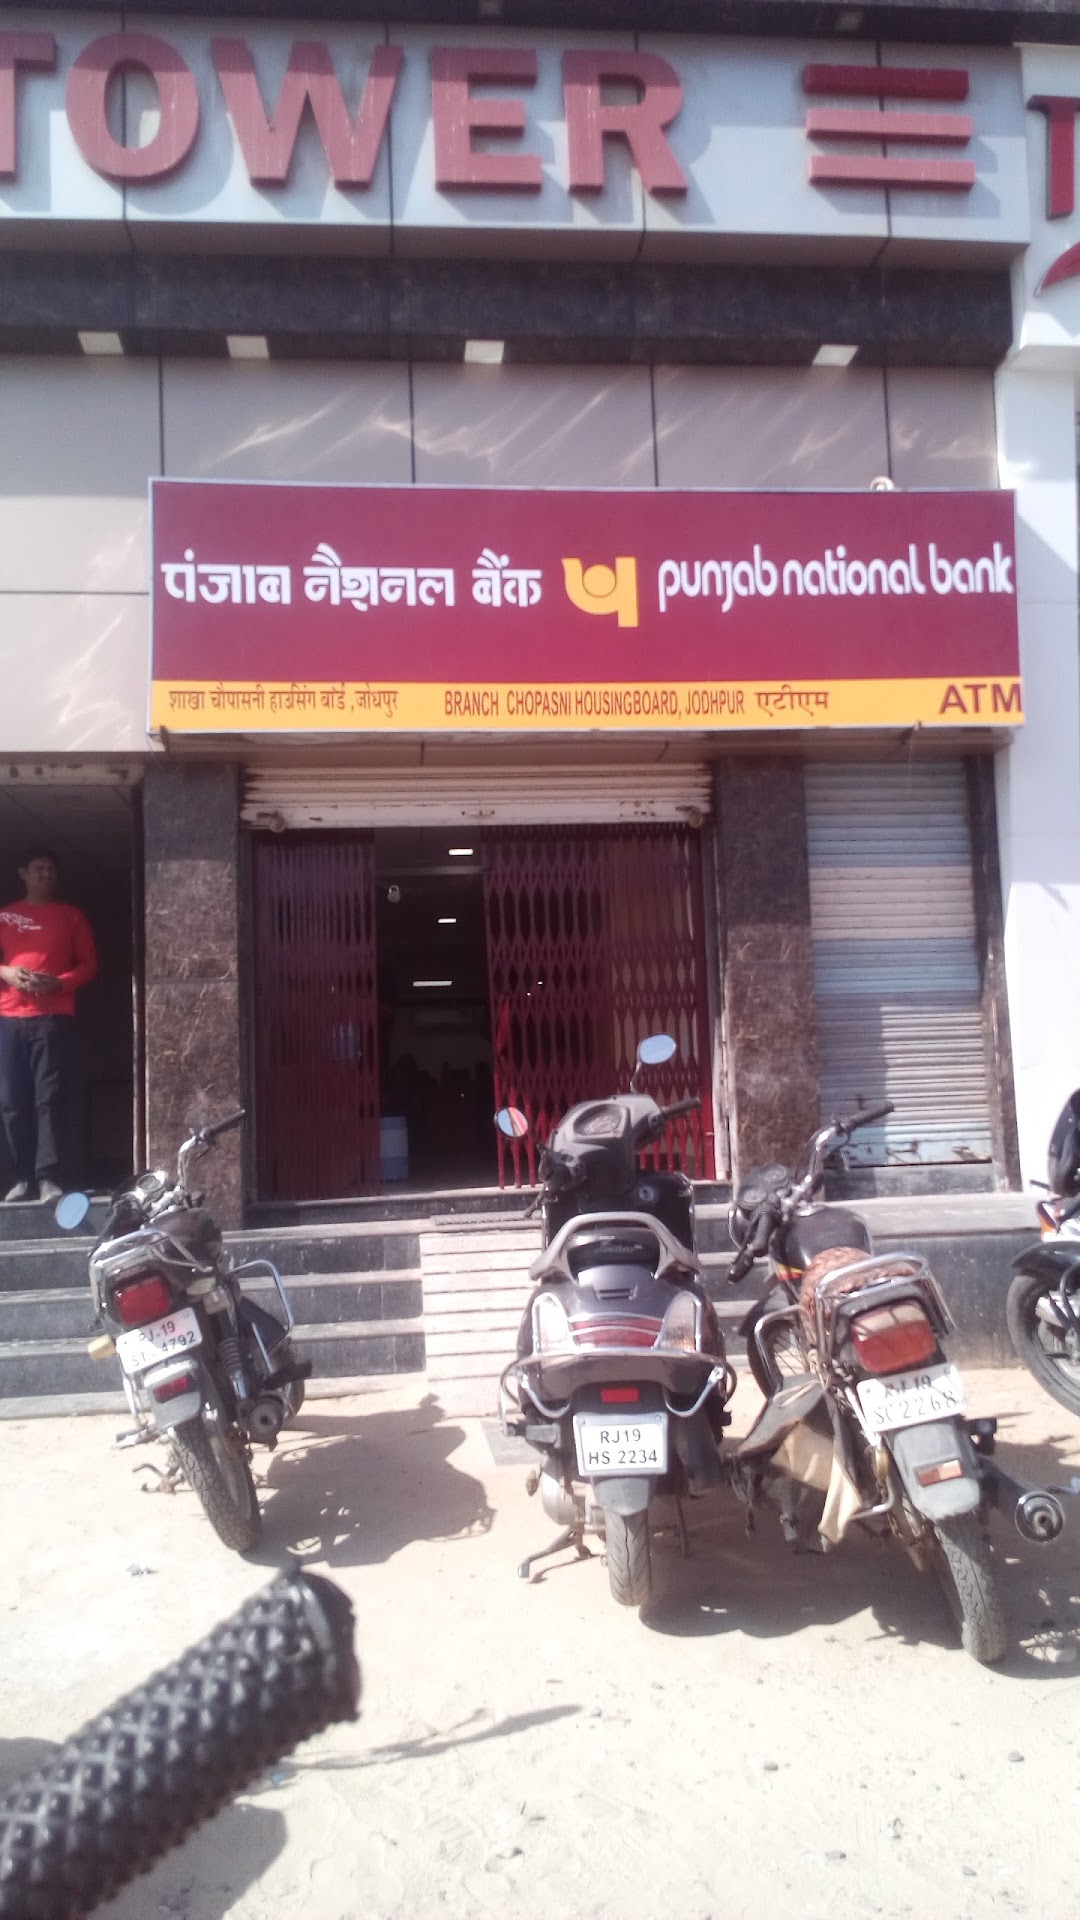 Punjab National Bank - Chopasni Housing Board Branch